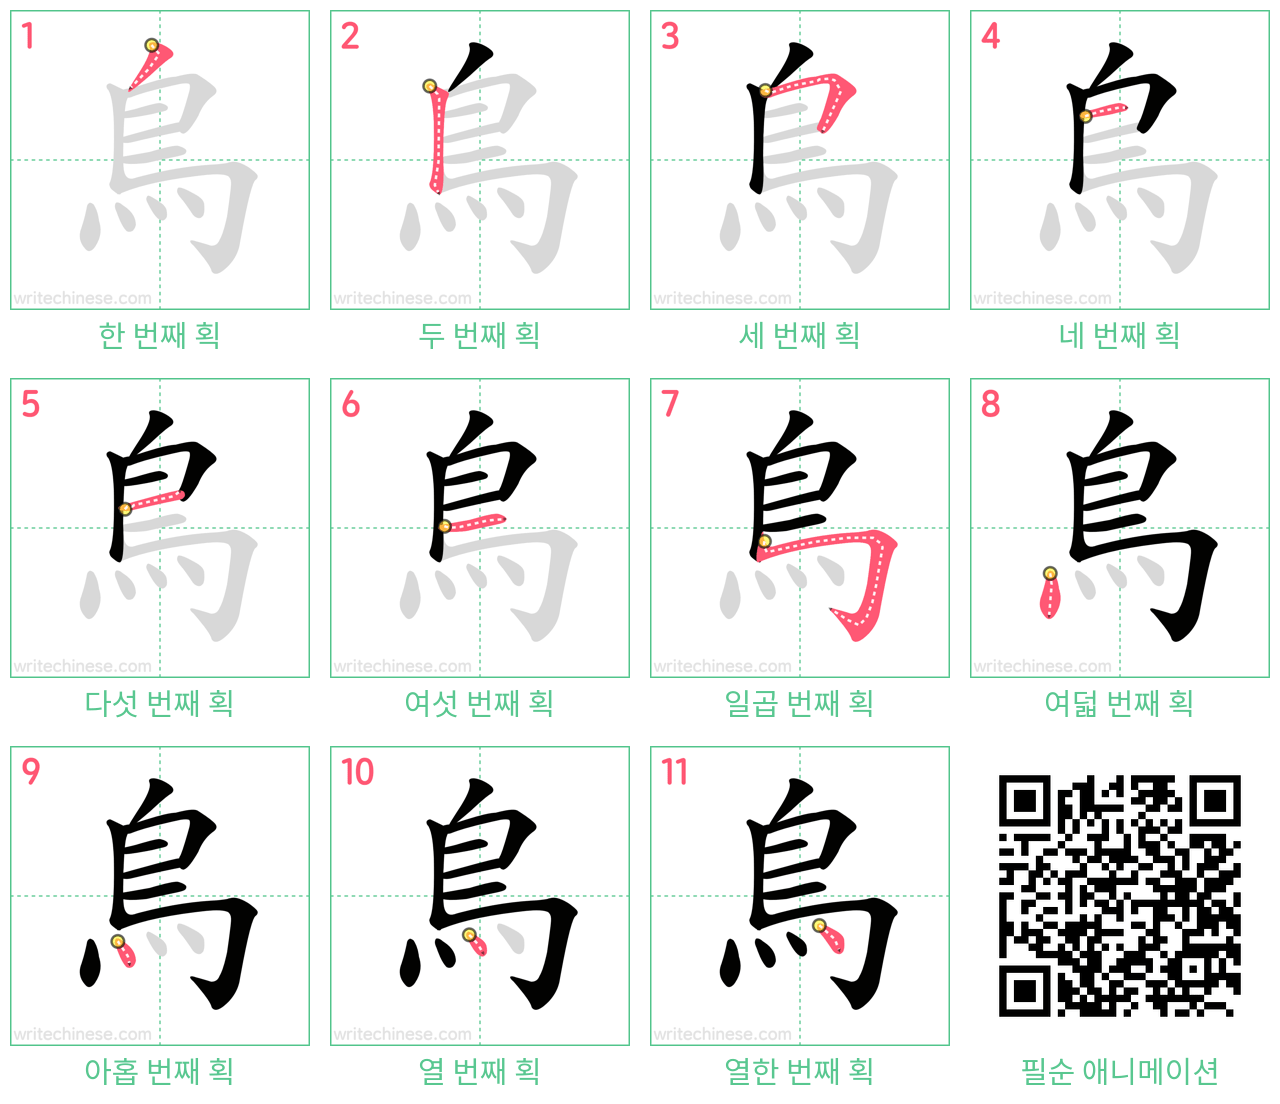 鳥 step-by-step stroke order diagrams